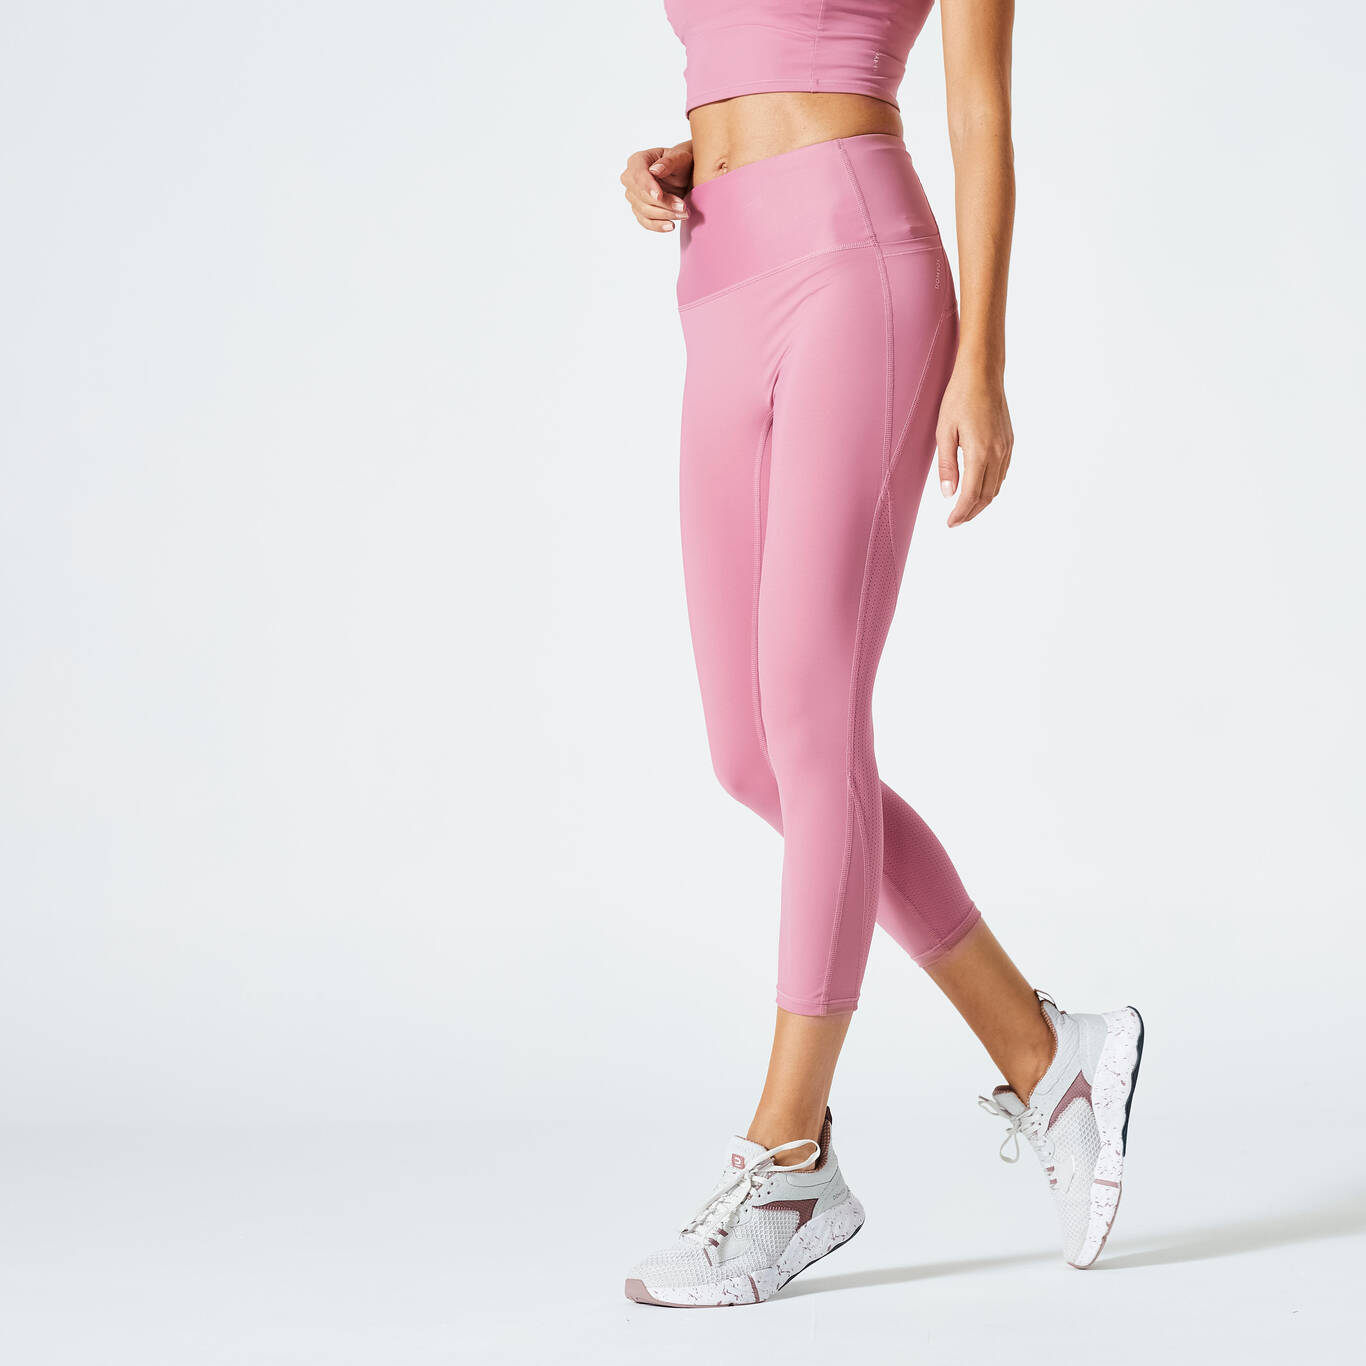 Legging Pendek Shaping High-Waisted Fitness Kardio Wanita - Pink